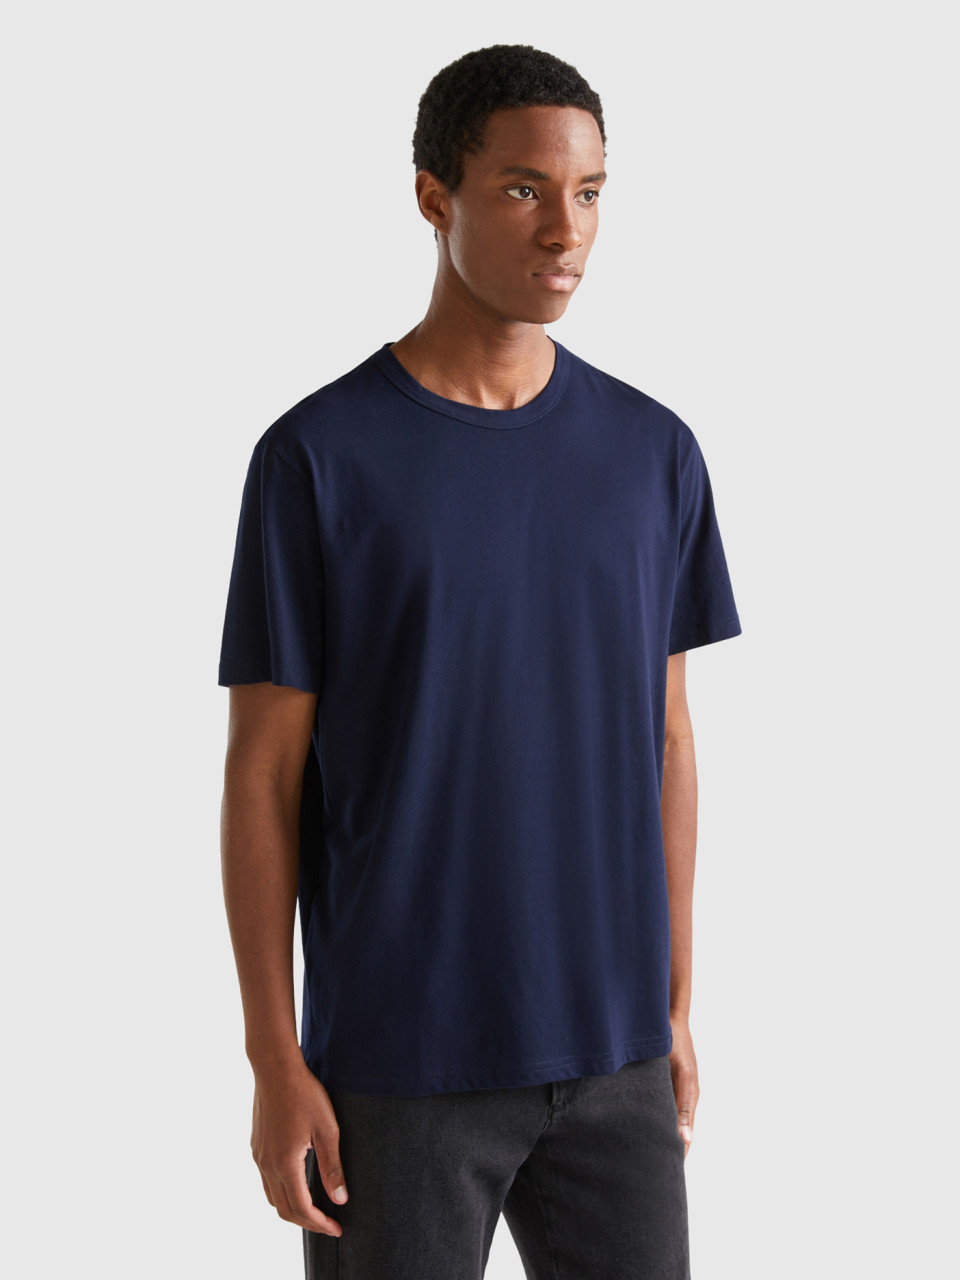 Benetton, T-shirt En Coton Chaud, Bleu Foncé, Homme